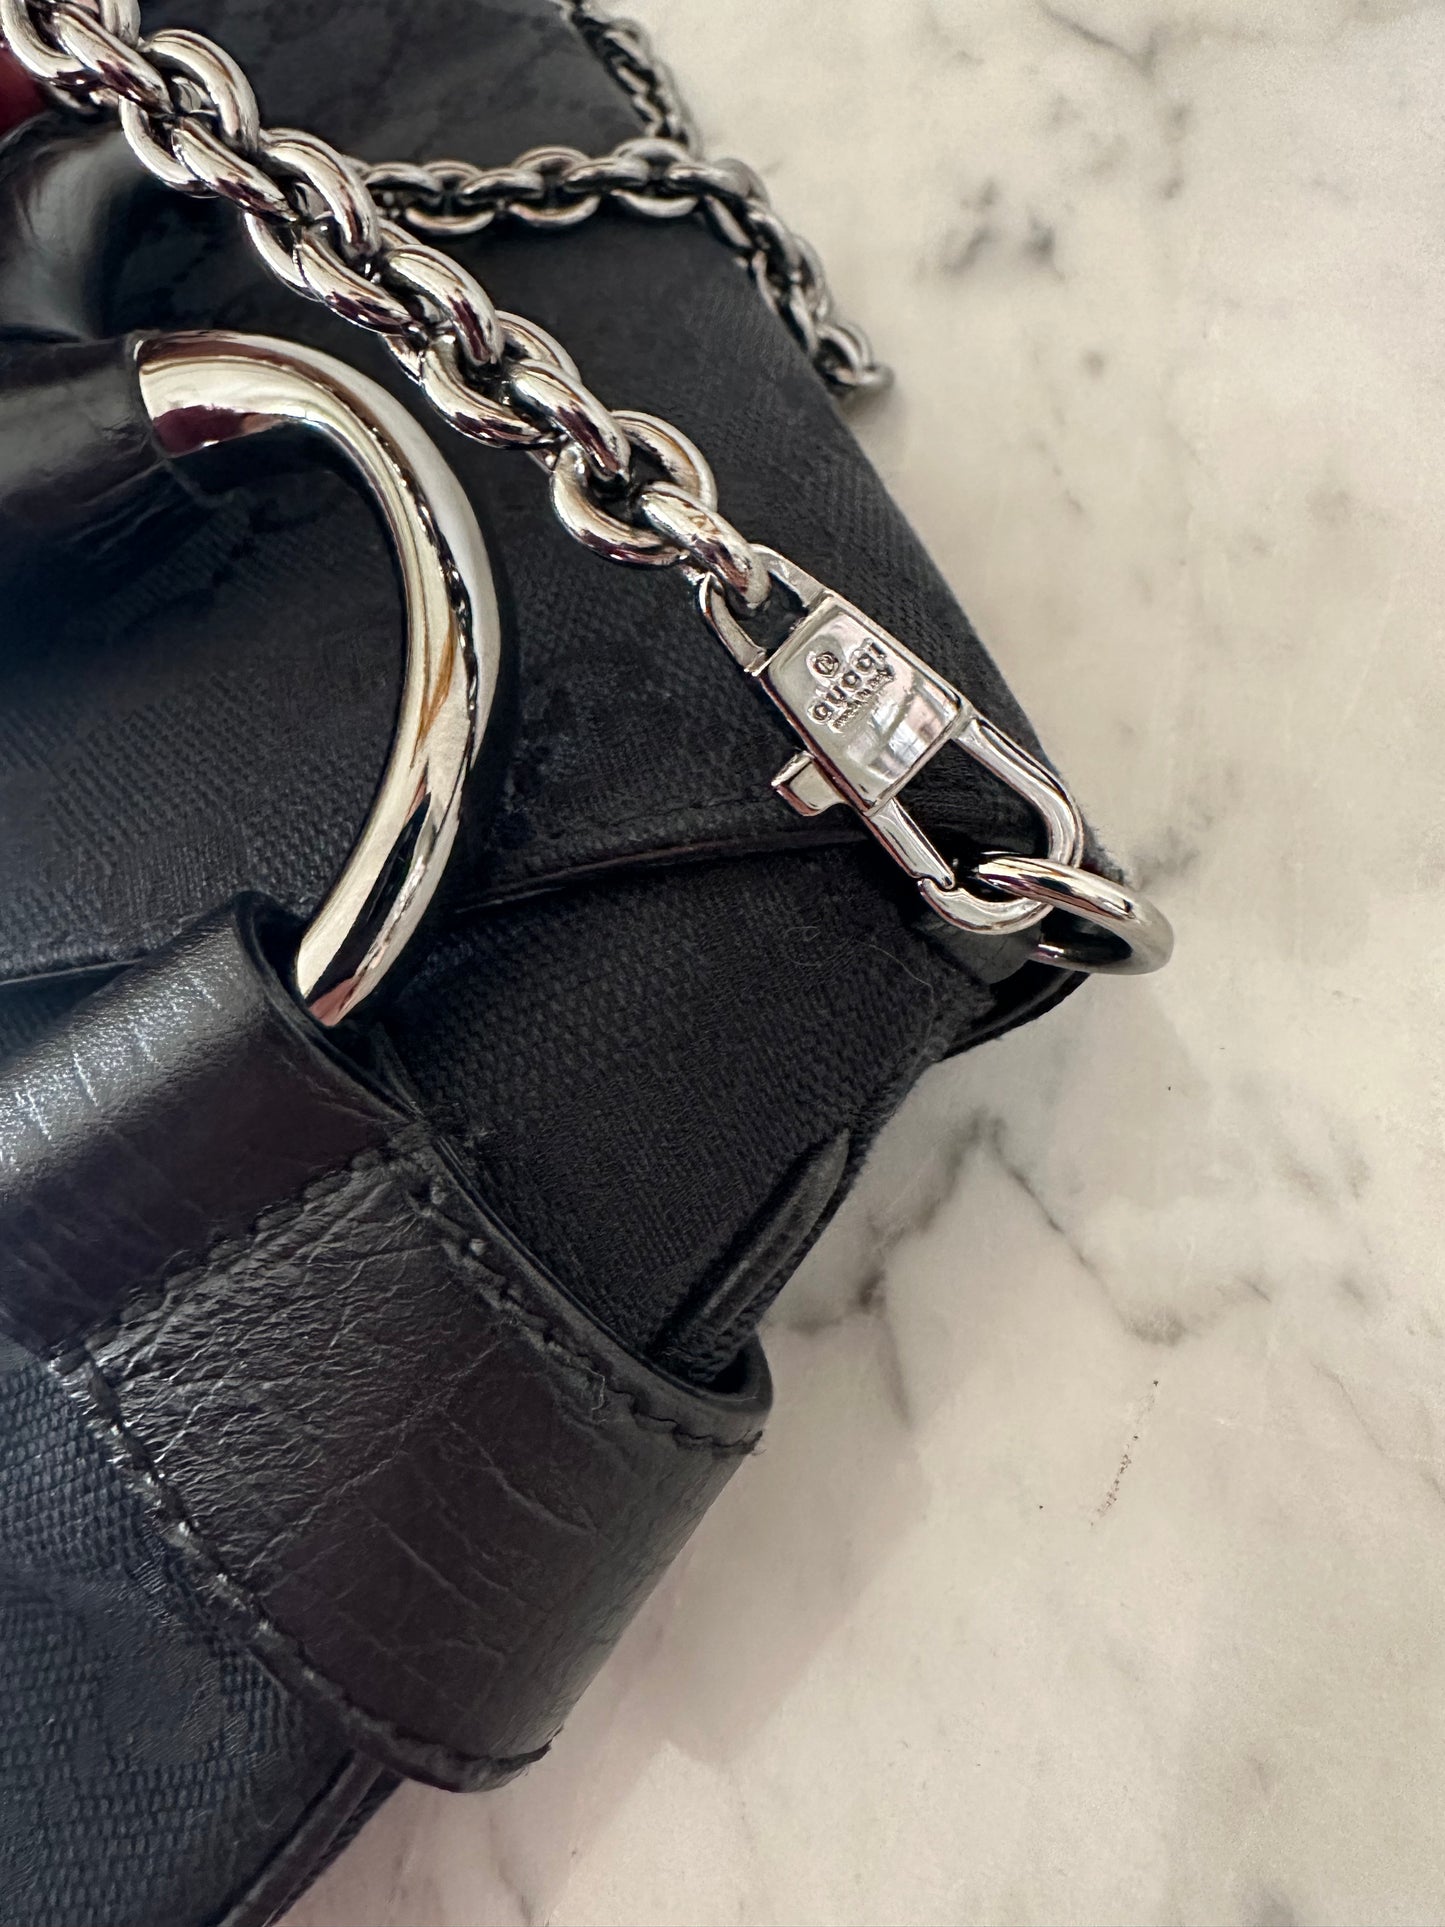 Gucci Horsebit Chain bag